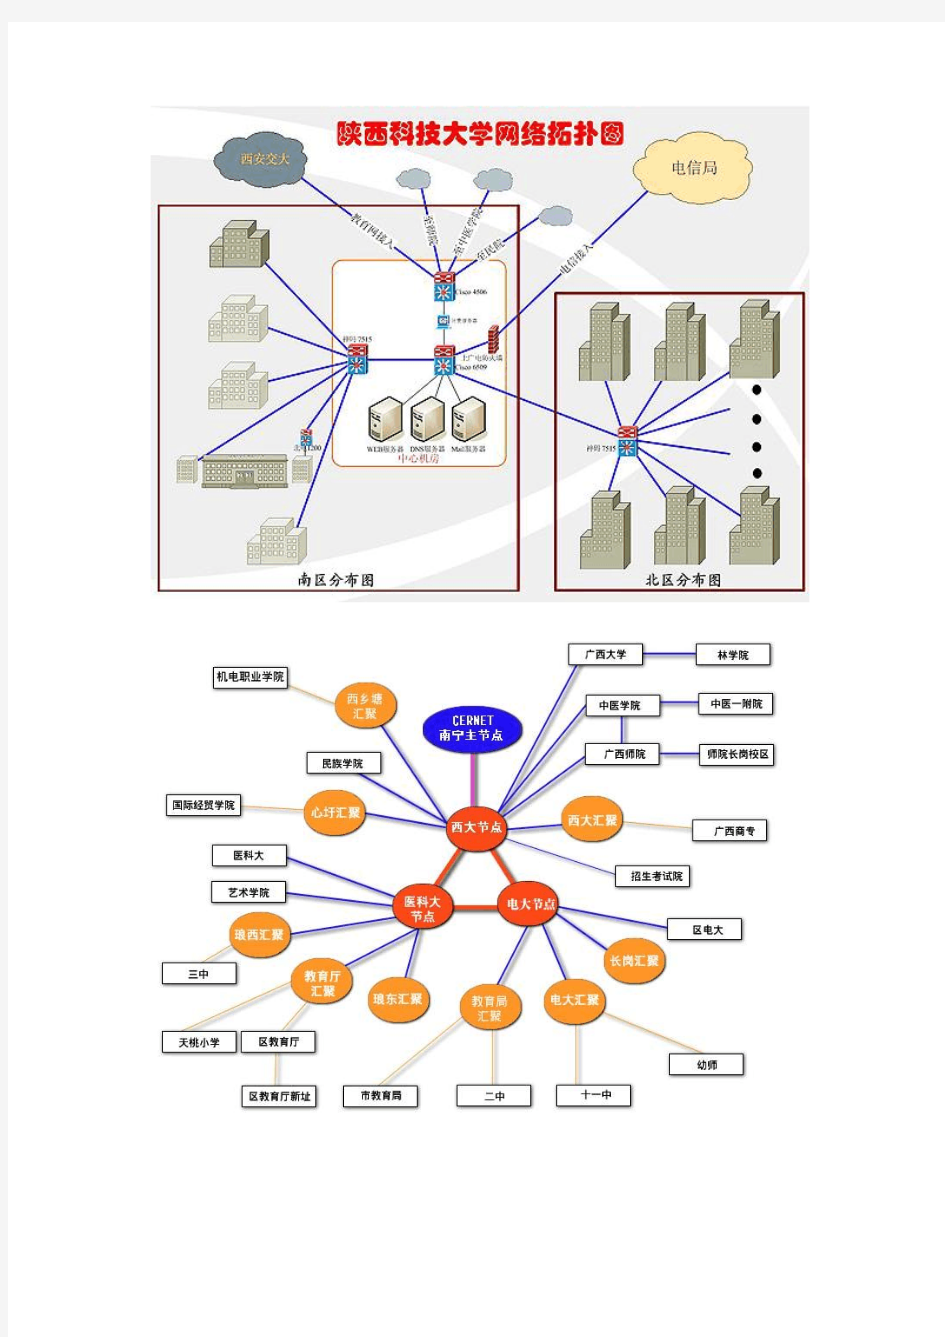 使用VISIO绘制网络拓朴图任务描述根据给定的草图使用VISIO绘制